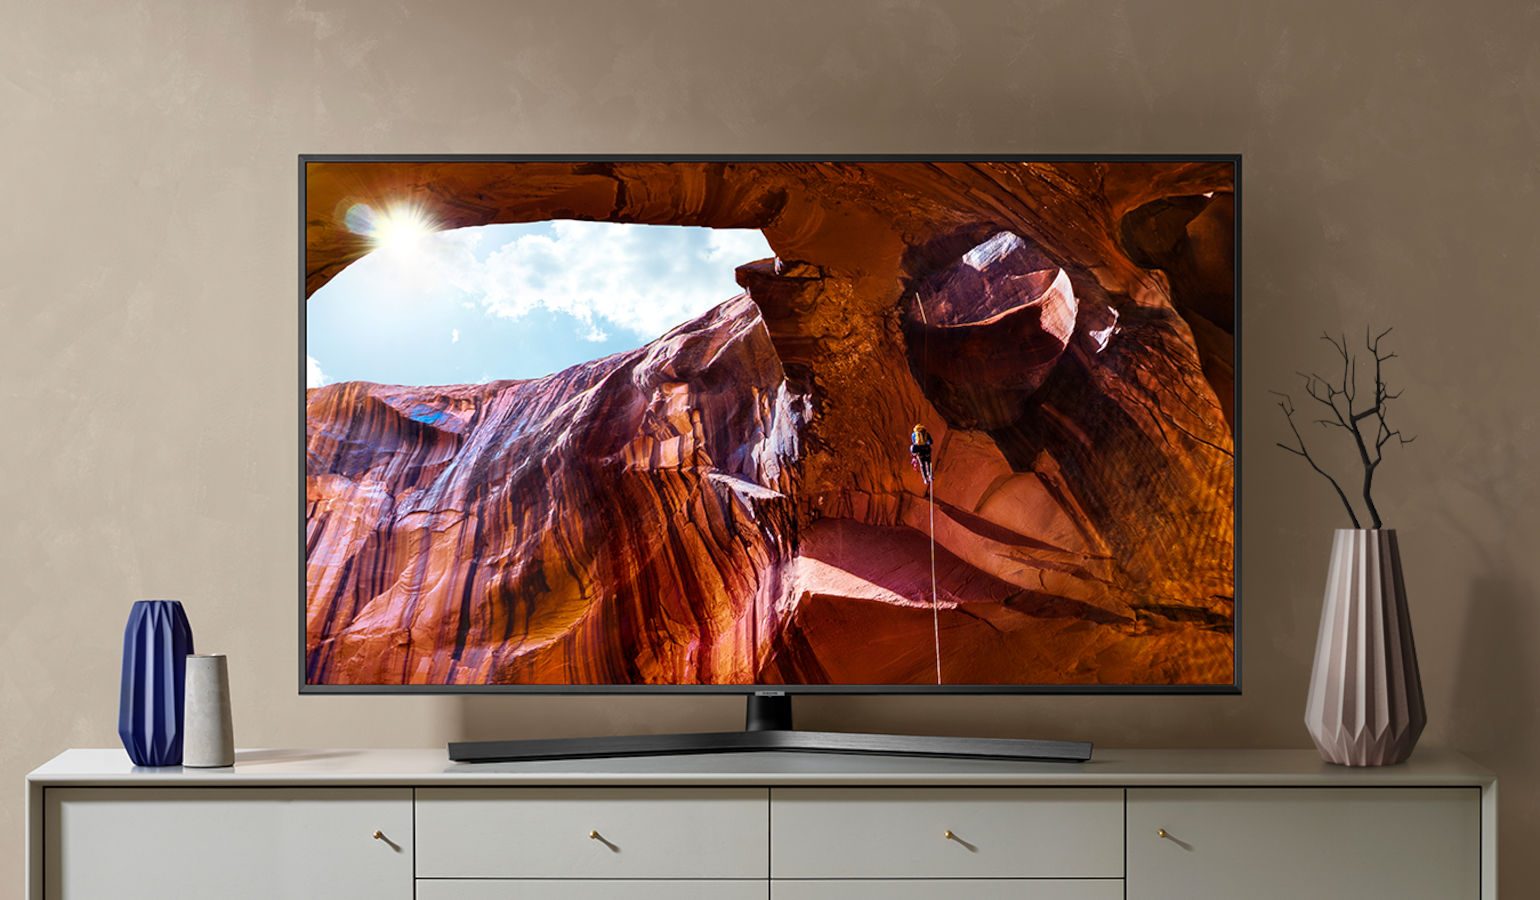 uitlijning Beperkt plakband Lcd tv's worden tijdelijk duurder door verkoop fabrieken' | FWD